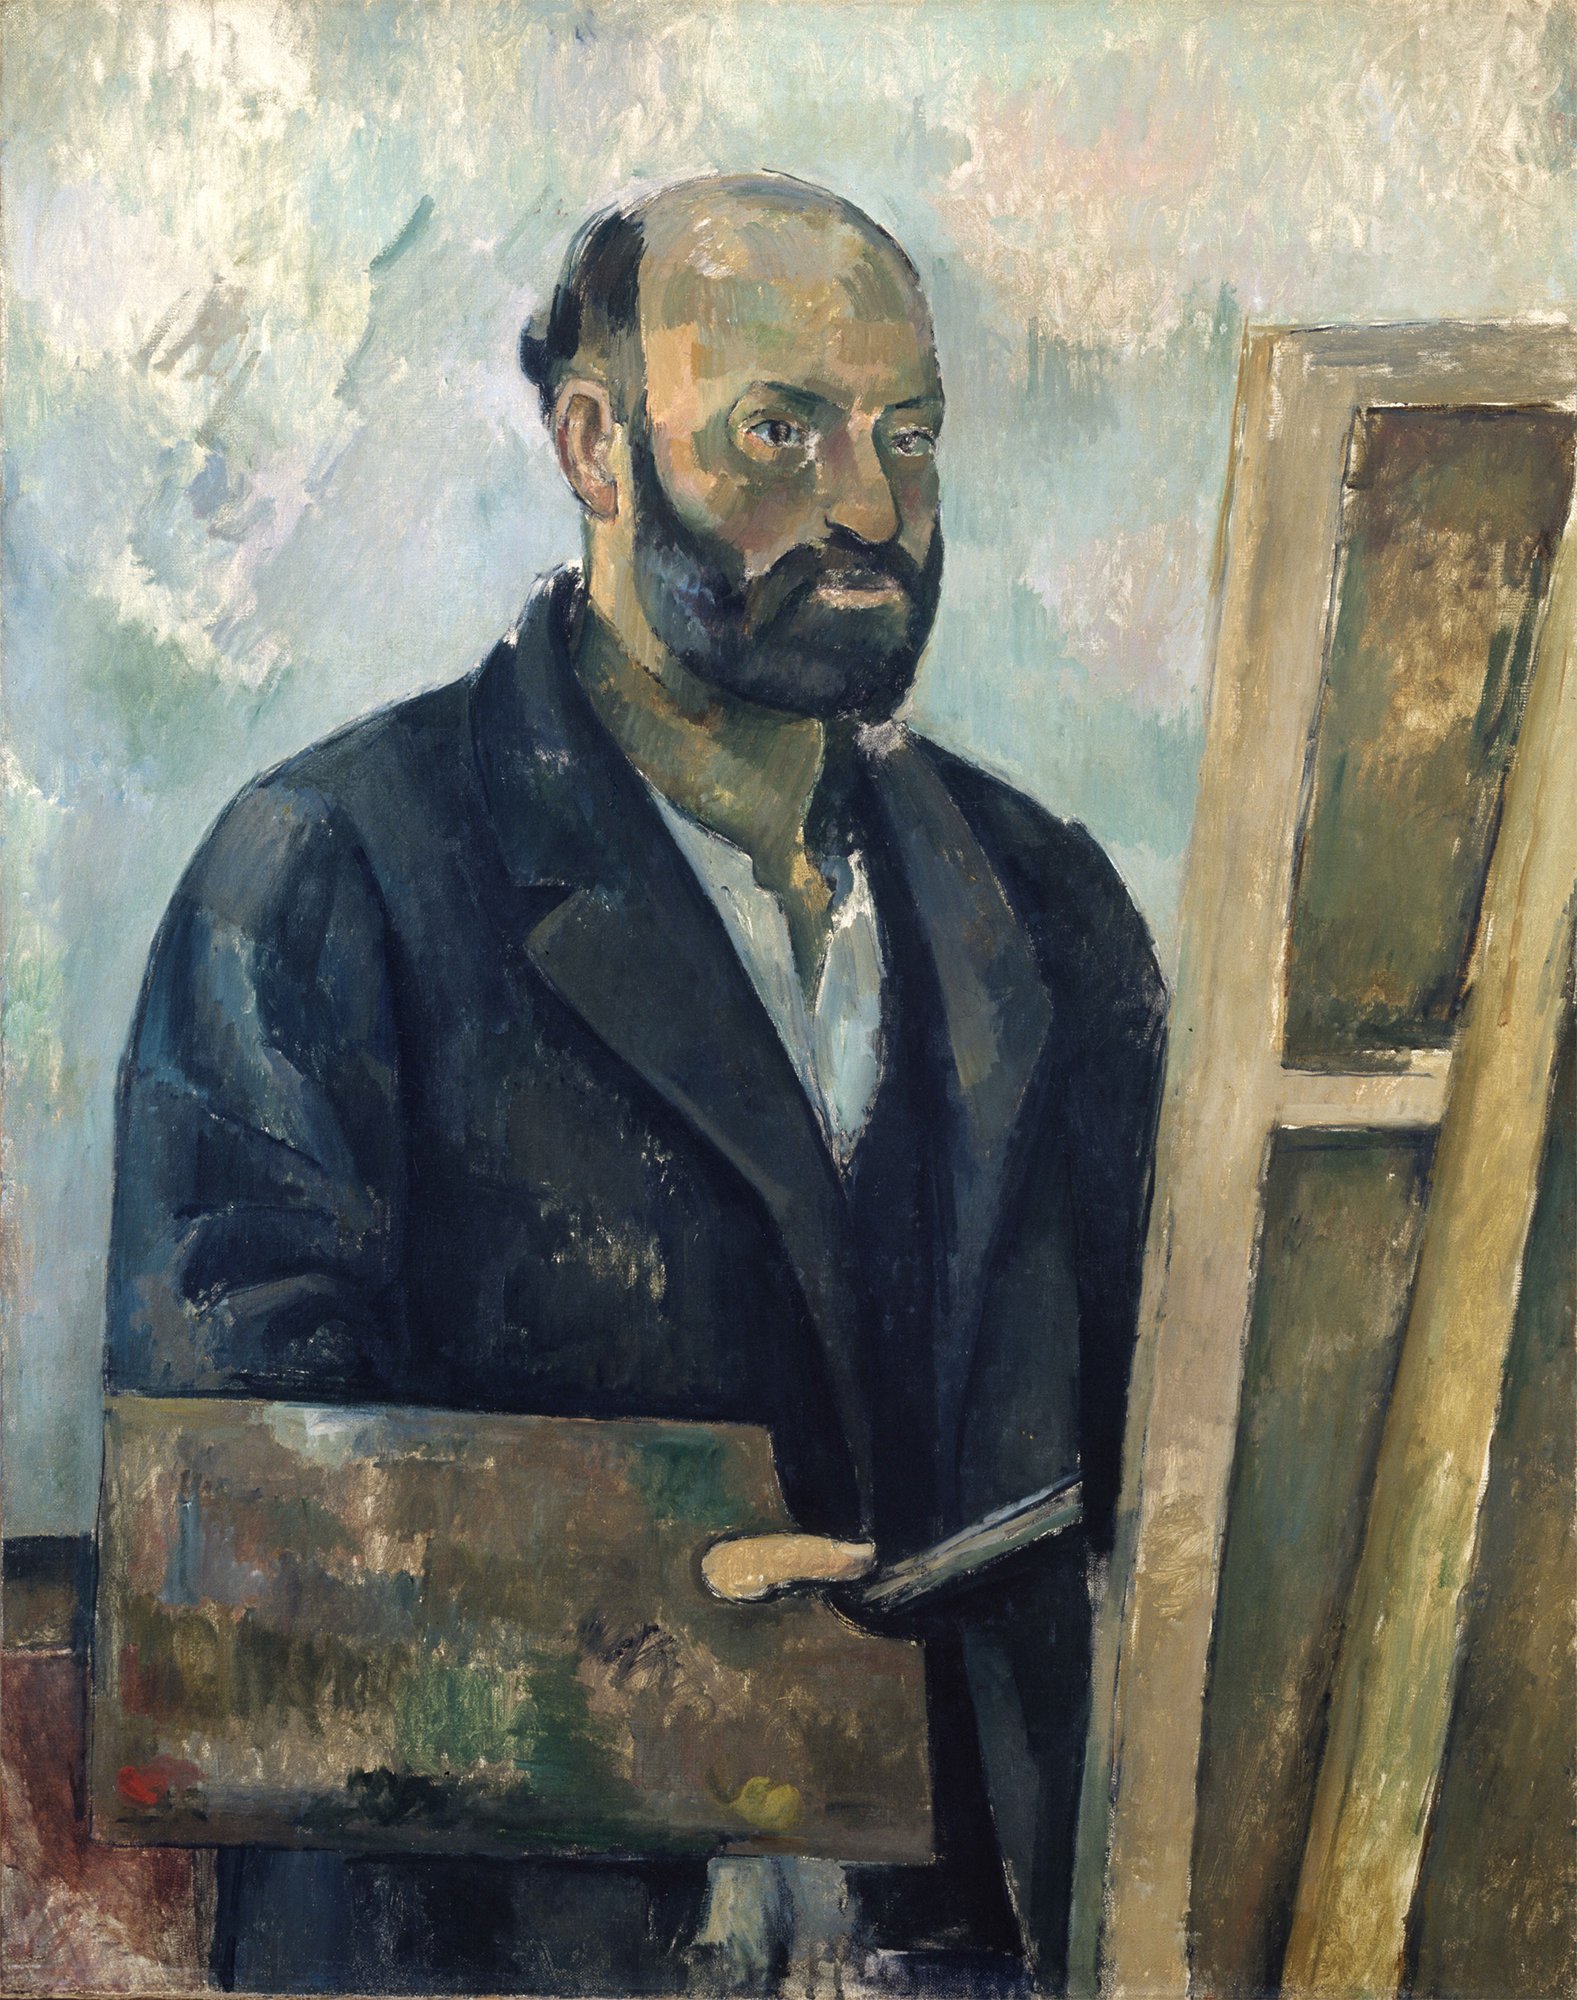 "Selbstbildnis mit Palette" des Künstlers Cézanne. Der Künstler trägt einen dunkeln Anzug und steht vor einer Palette.